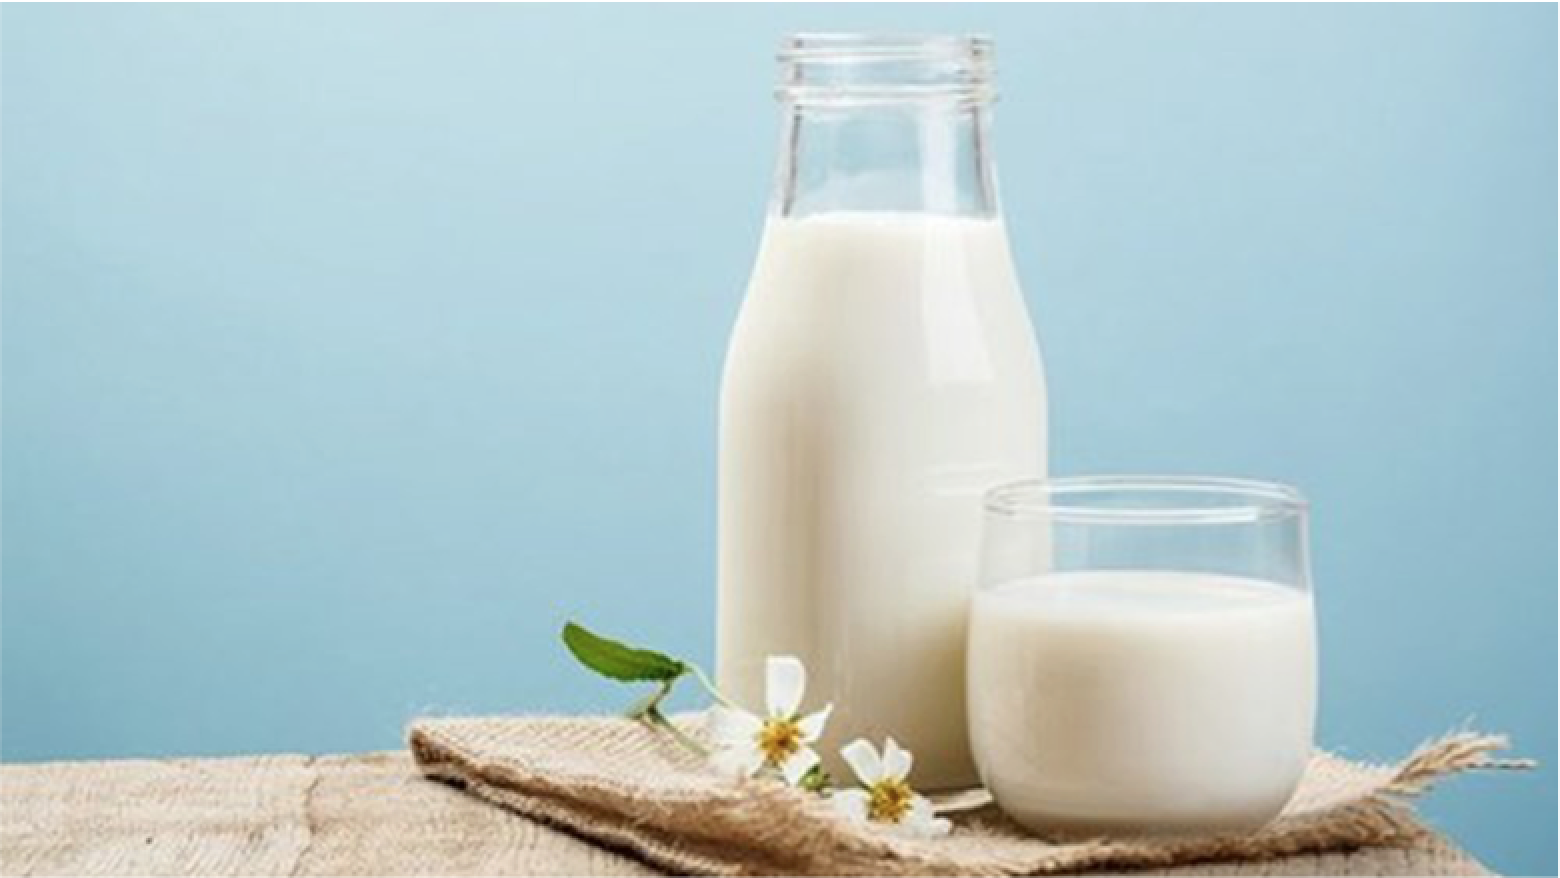 Bộ Sưu Tập Hình Ảnh Sữa Cực Chất Full 4K với Hơn 999+ Hình Ảnh Sữa